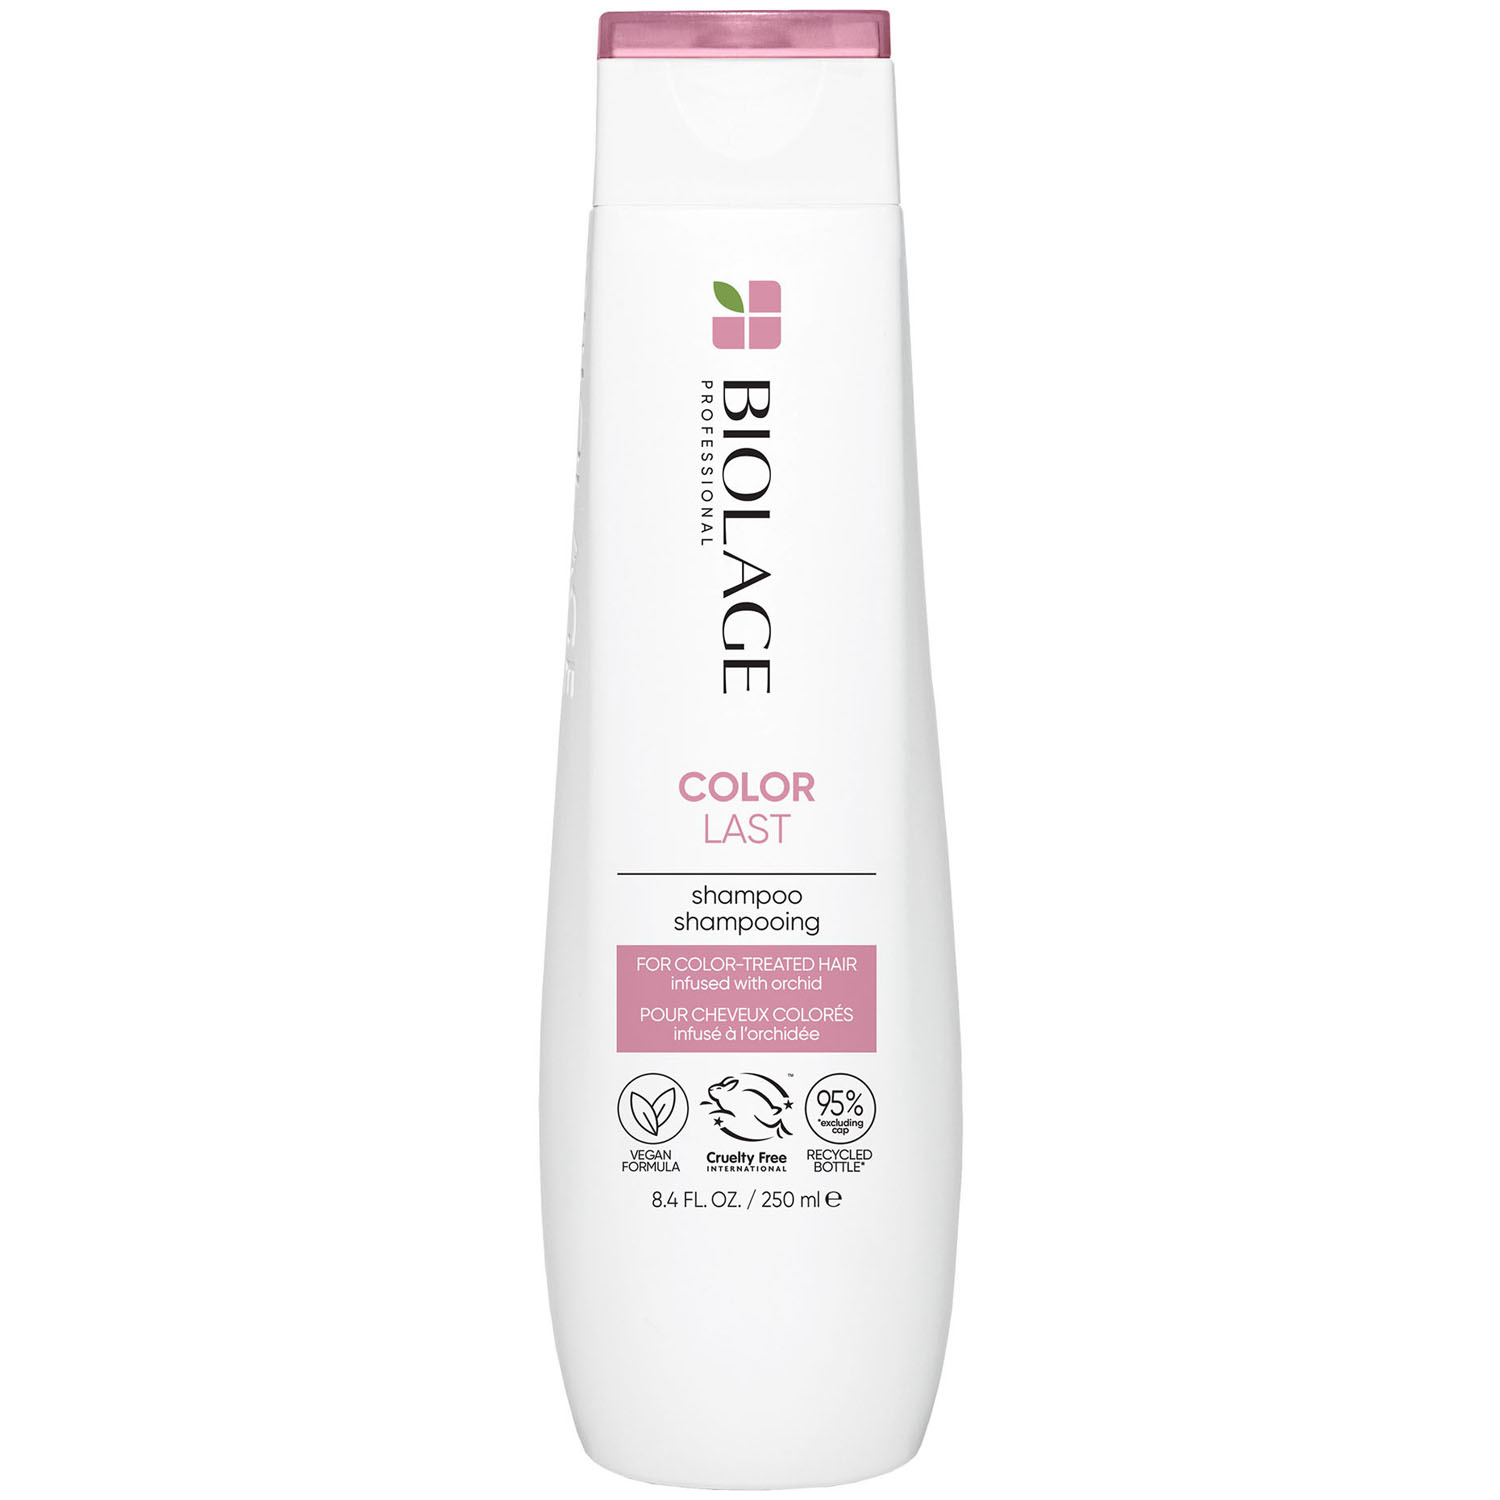 шампунь для окрашенных волос biolage colorlast shampoo шампунь 1000мл Matrix Шампунь для окрашенных волос, 250 мл (Matrix, Biolage)